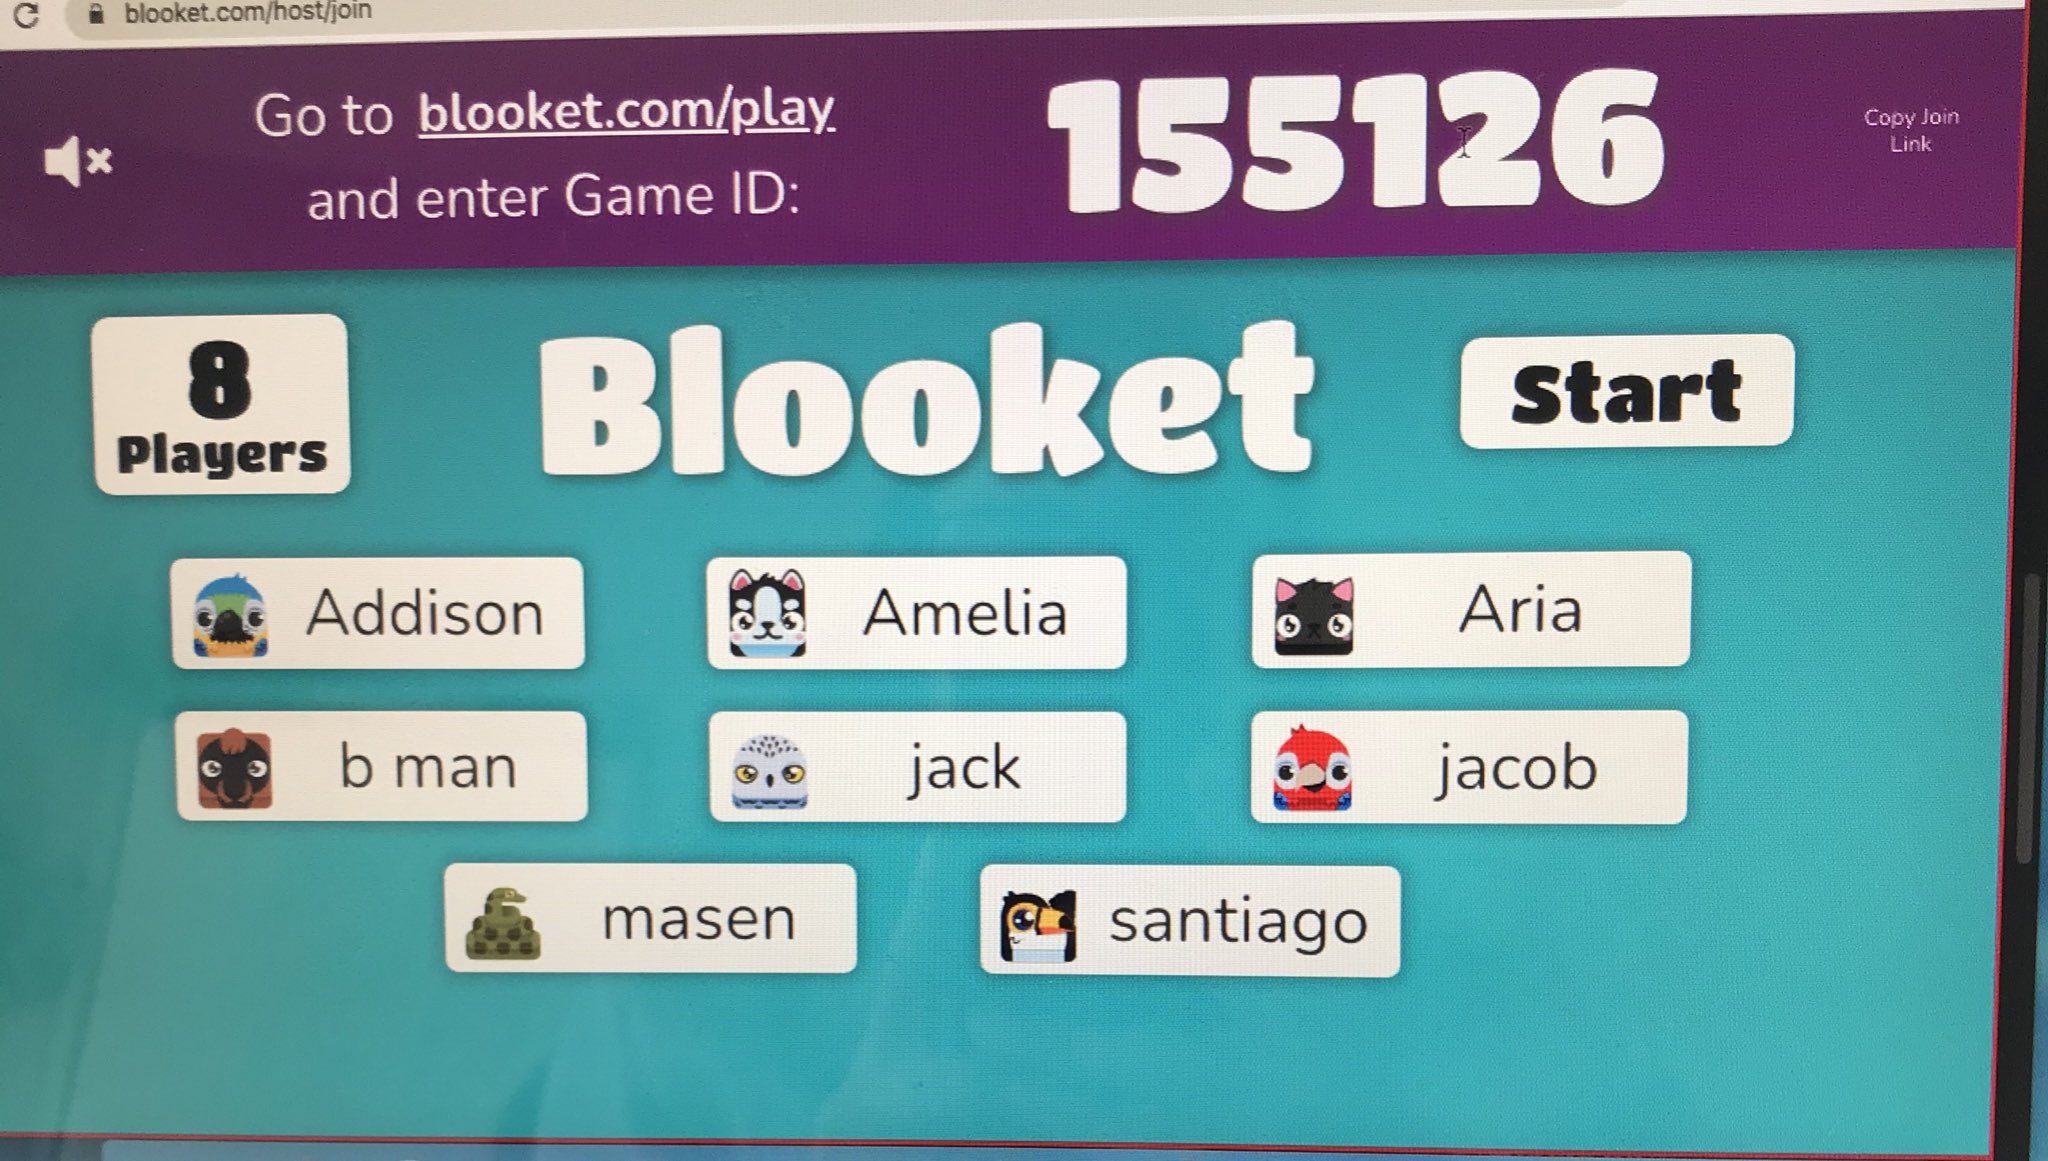 Blooket.com play